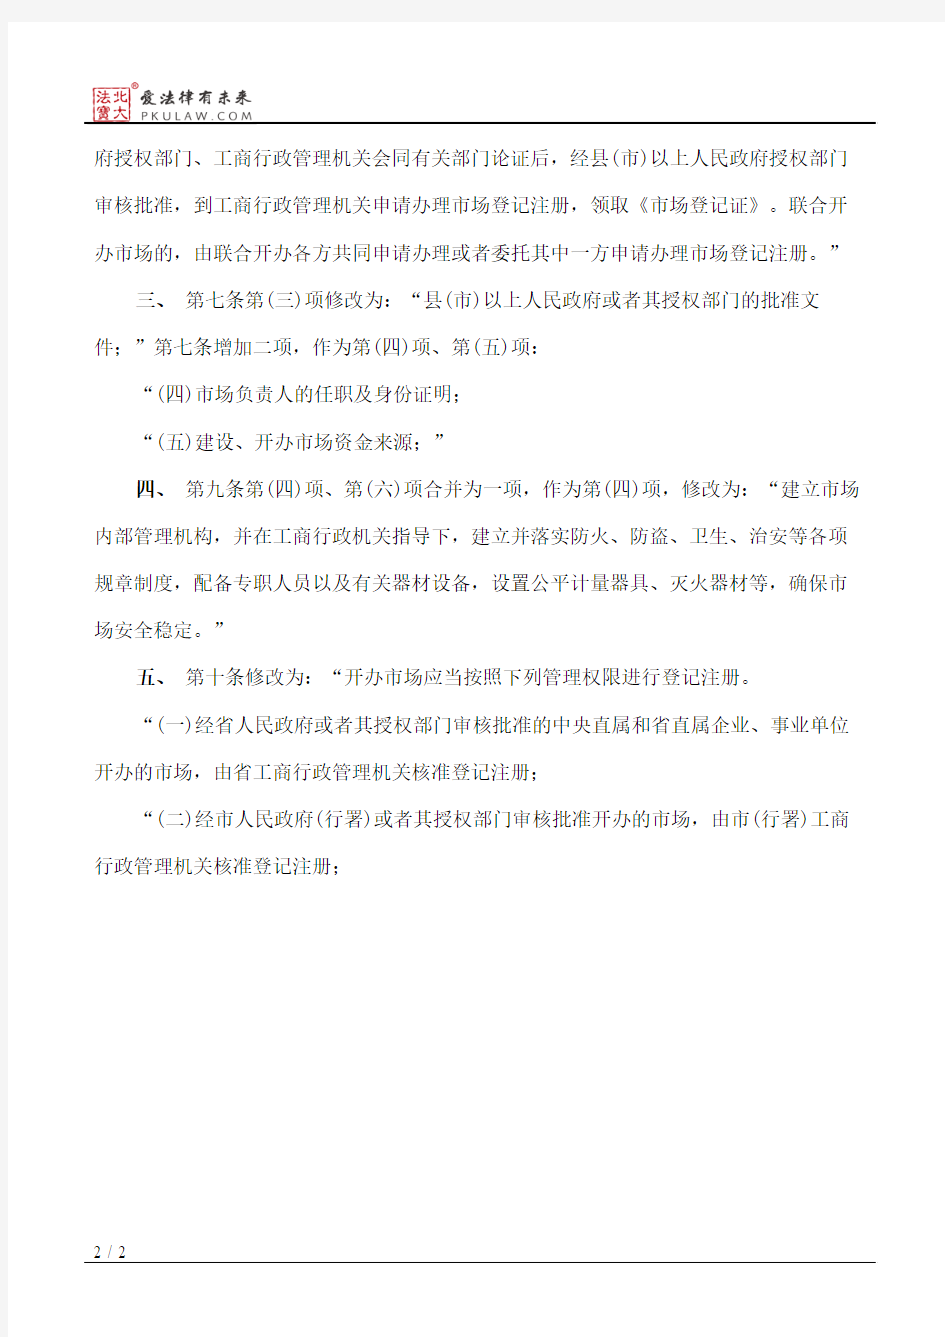 黑龙江省人民政府关于修改《黑龙江省商品交易市场登记管理办法》